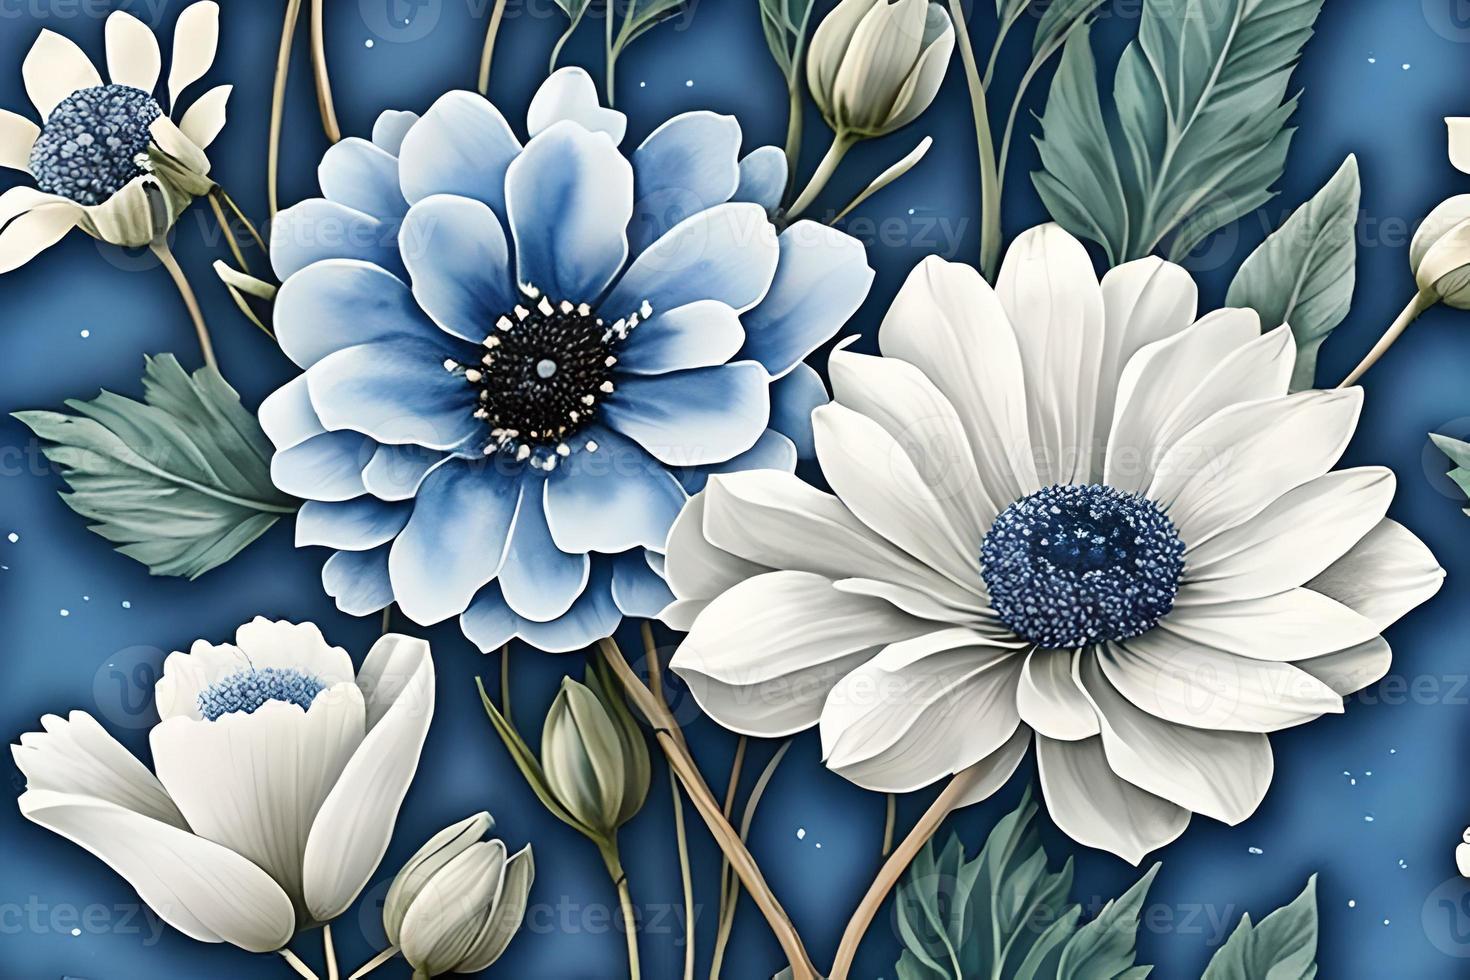 waterverf stoffig blauw en wit bloemen schilderij kunst. achtergrond en patroon structuur behang. foto